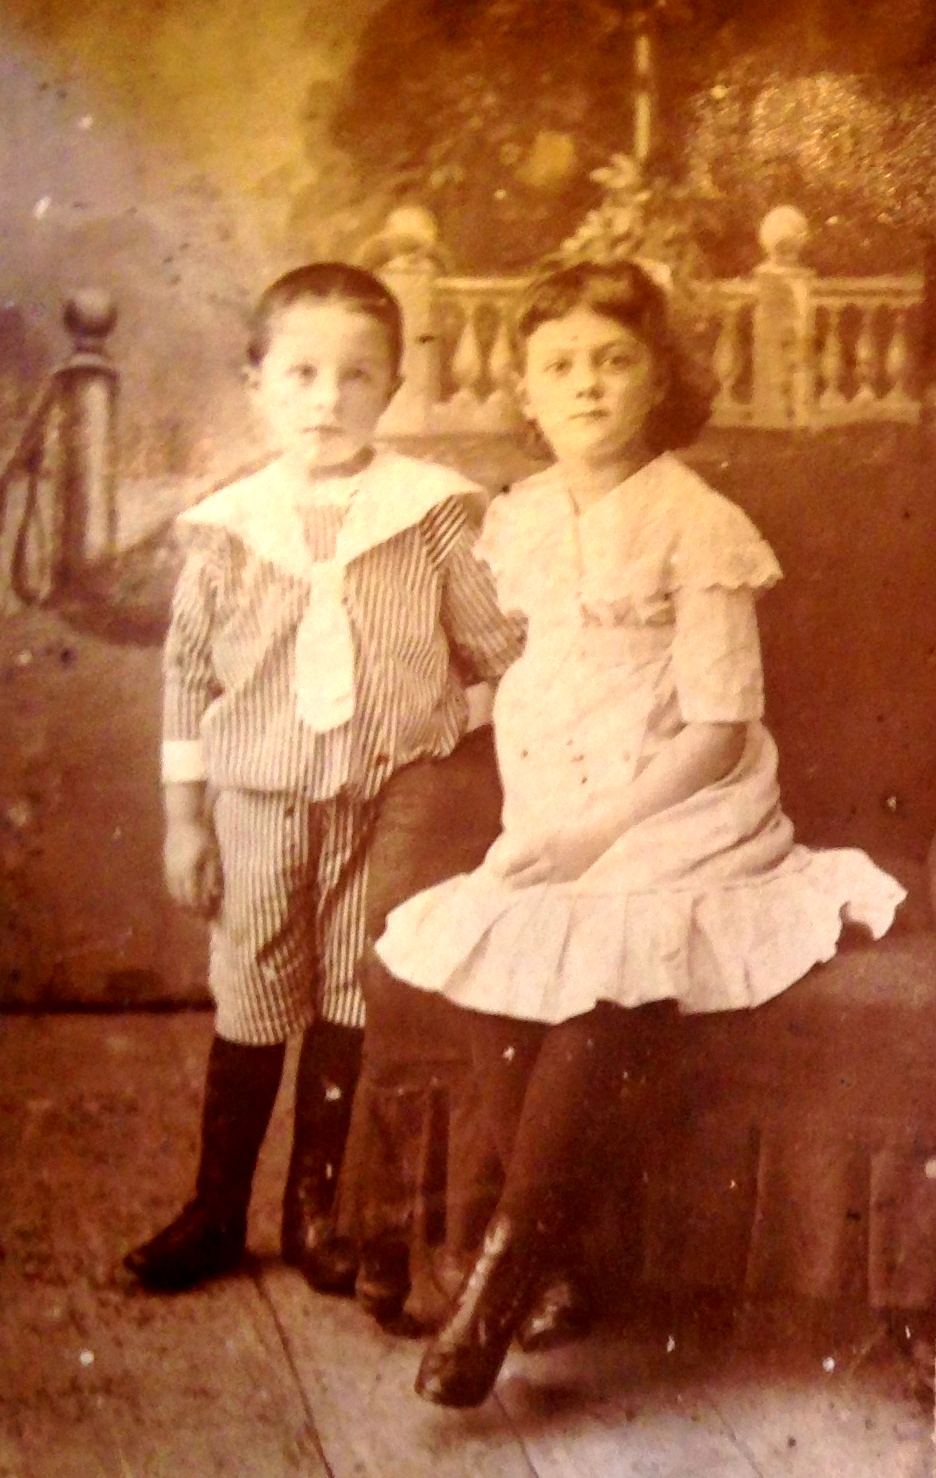 Юра Кадников - 5 лет, Таня Кадникова - 7 лет. г. Чухлома, 1917 год. Фото из семейного архива правнучки Е.Ю.Черкасовой.